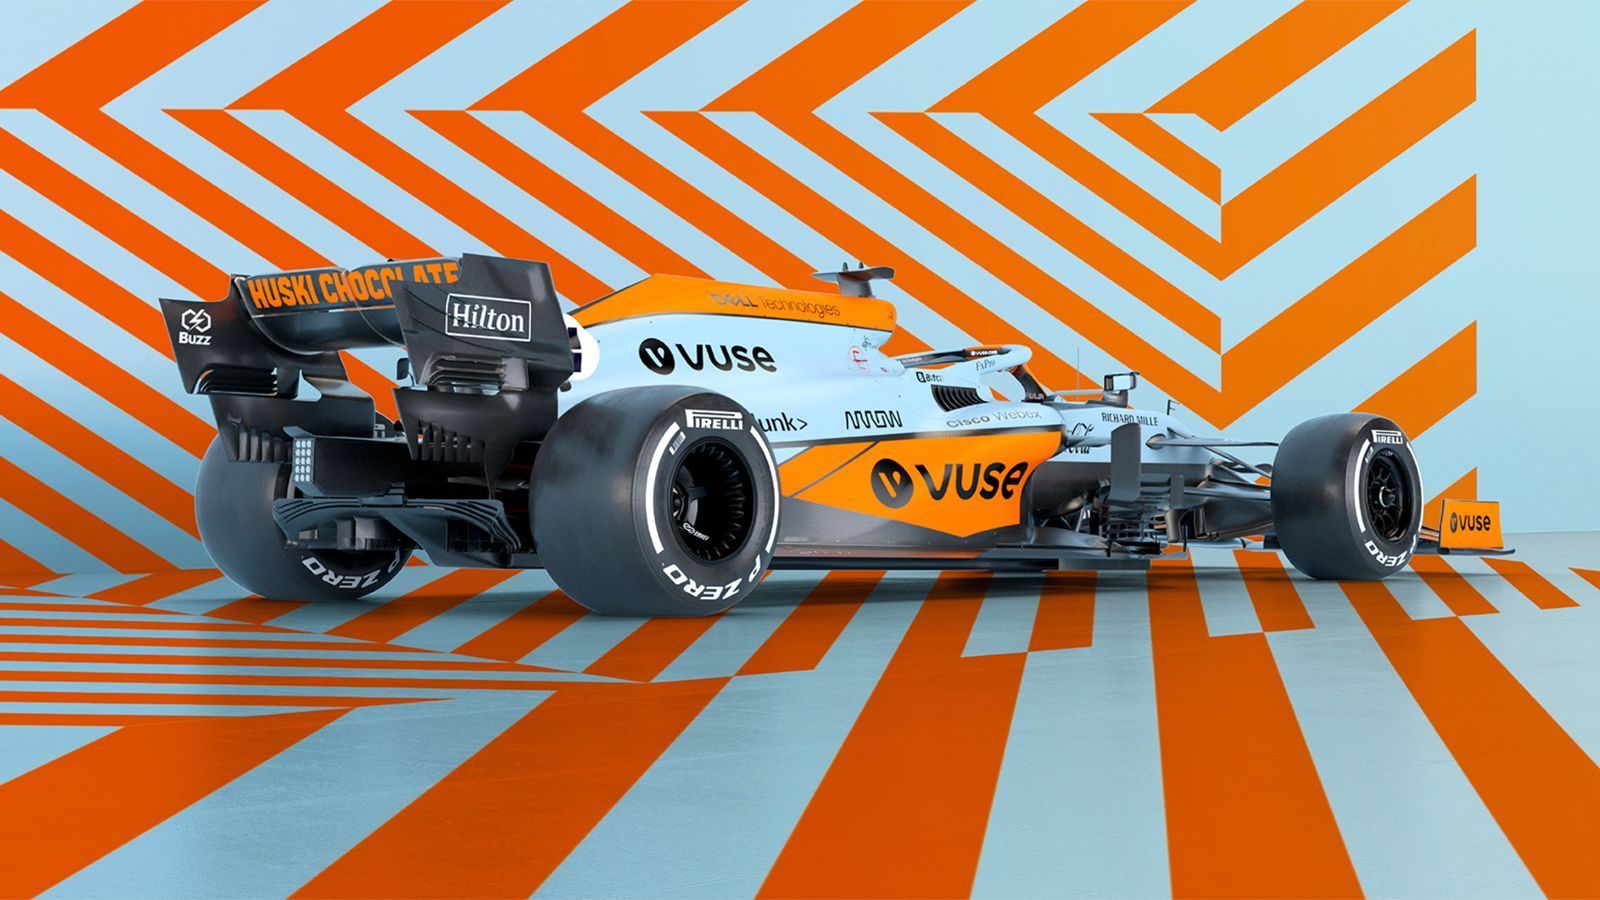 
                <strong>McLaren in Monaco in kultigem Retro-Look</strong><br>
                Besondere Rennen erfordern besondere Maßnahmen: Für den Klassiker in Monaco wirft sich McLaren deshalb in Schale. Das Traditionsteam fährt mit der Retro-Lackierung in den Farben Blau und Orange. Das Design der Erdöl-Marke Gulf genießt schon lange Kultstatus im Motorsport, der Look soll eine "Hommage an den gefeierten Rennwagen-Look von Gulf sein", sagte McLaren-CEO Zak Brown. "Wir sind große Fans von mutigen und kühnen Designs, und das markante Gulf-Blau gehört zu den beliebtesten Farben im Rennsport, ein gefeiertes Stück Kultur, das über die Welt des Motorsports hinausgeht." Lando Norris jubelt über seinen Dienstwagen für das berühmte Stadtrennen. "Ich glaube, man kann sagen, dass es mit Abstand das schönste Auto seit langem im Feld ist. Ich habe Zak gesagt, dass es sogar besser aussieht als unsere aktuelle Lackierung. Aber davon schien er nicht so überzeugt", so Norris. In der Tat soll die Sonderlackierung eine einmalige Sache sein. "Aber ich bin auf die Reaktionen der Fans gespannt. In Monaco werden wir sicherlich der Star sein", sagte Brown.
              